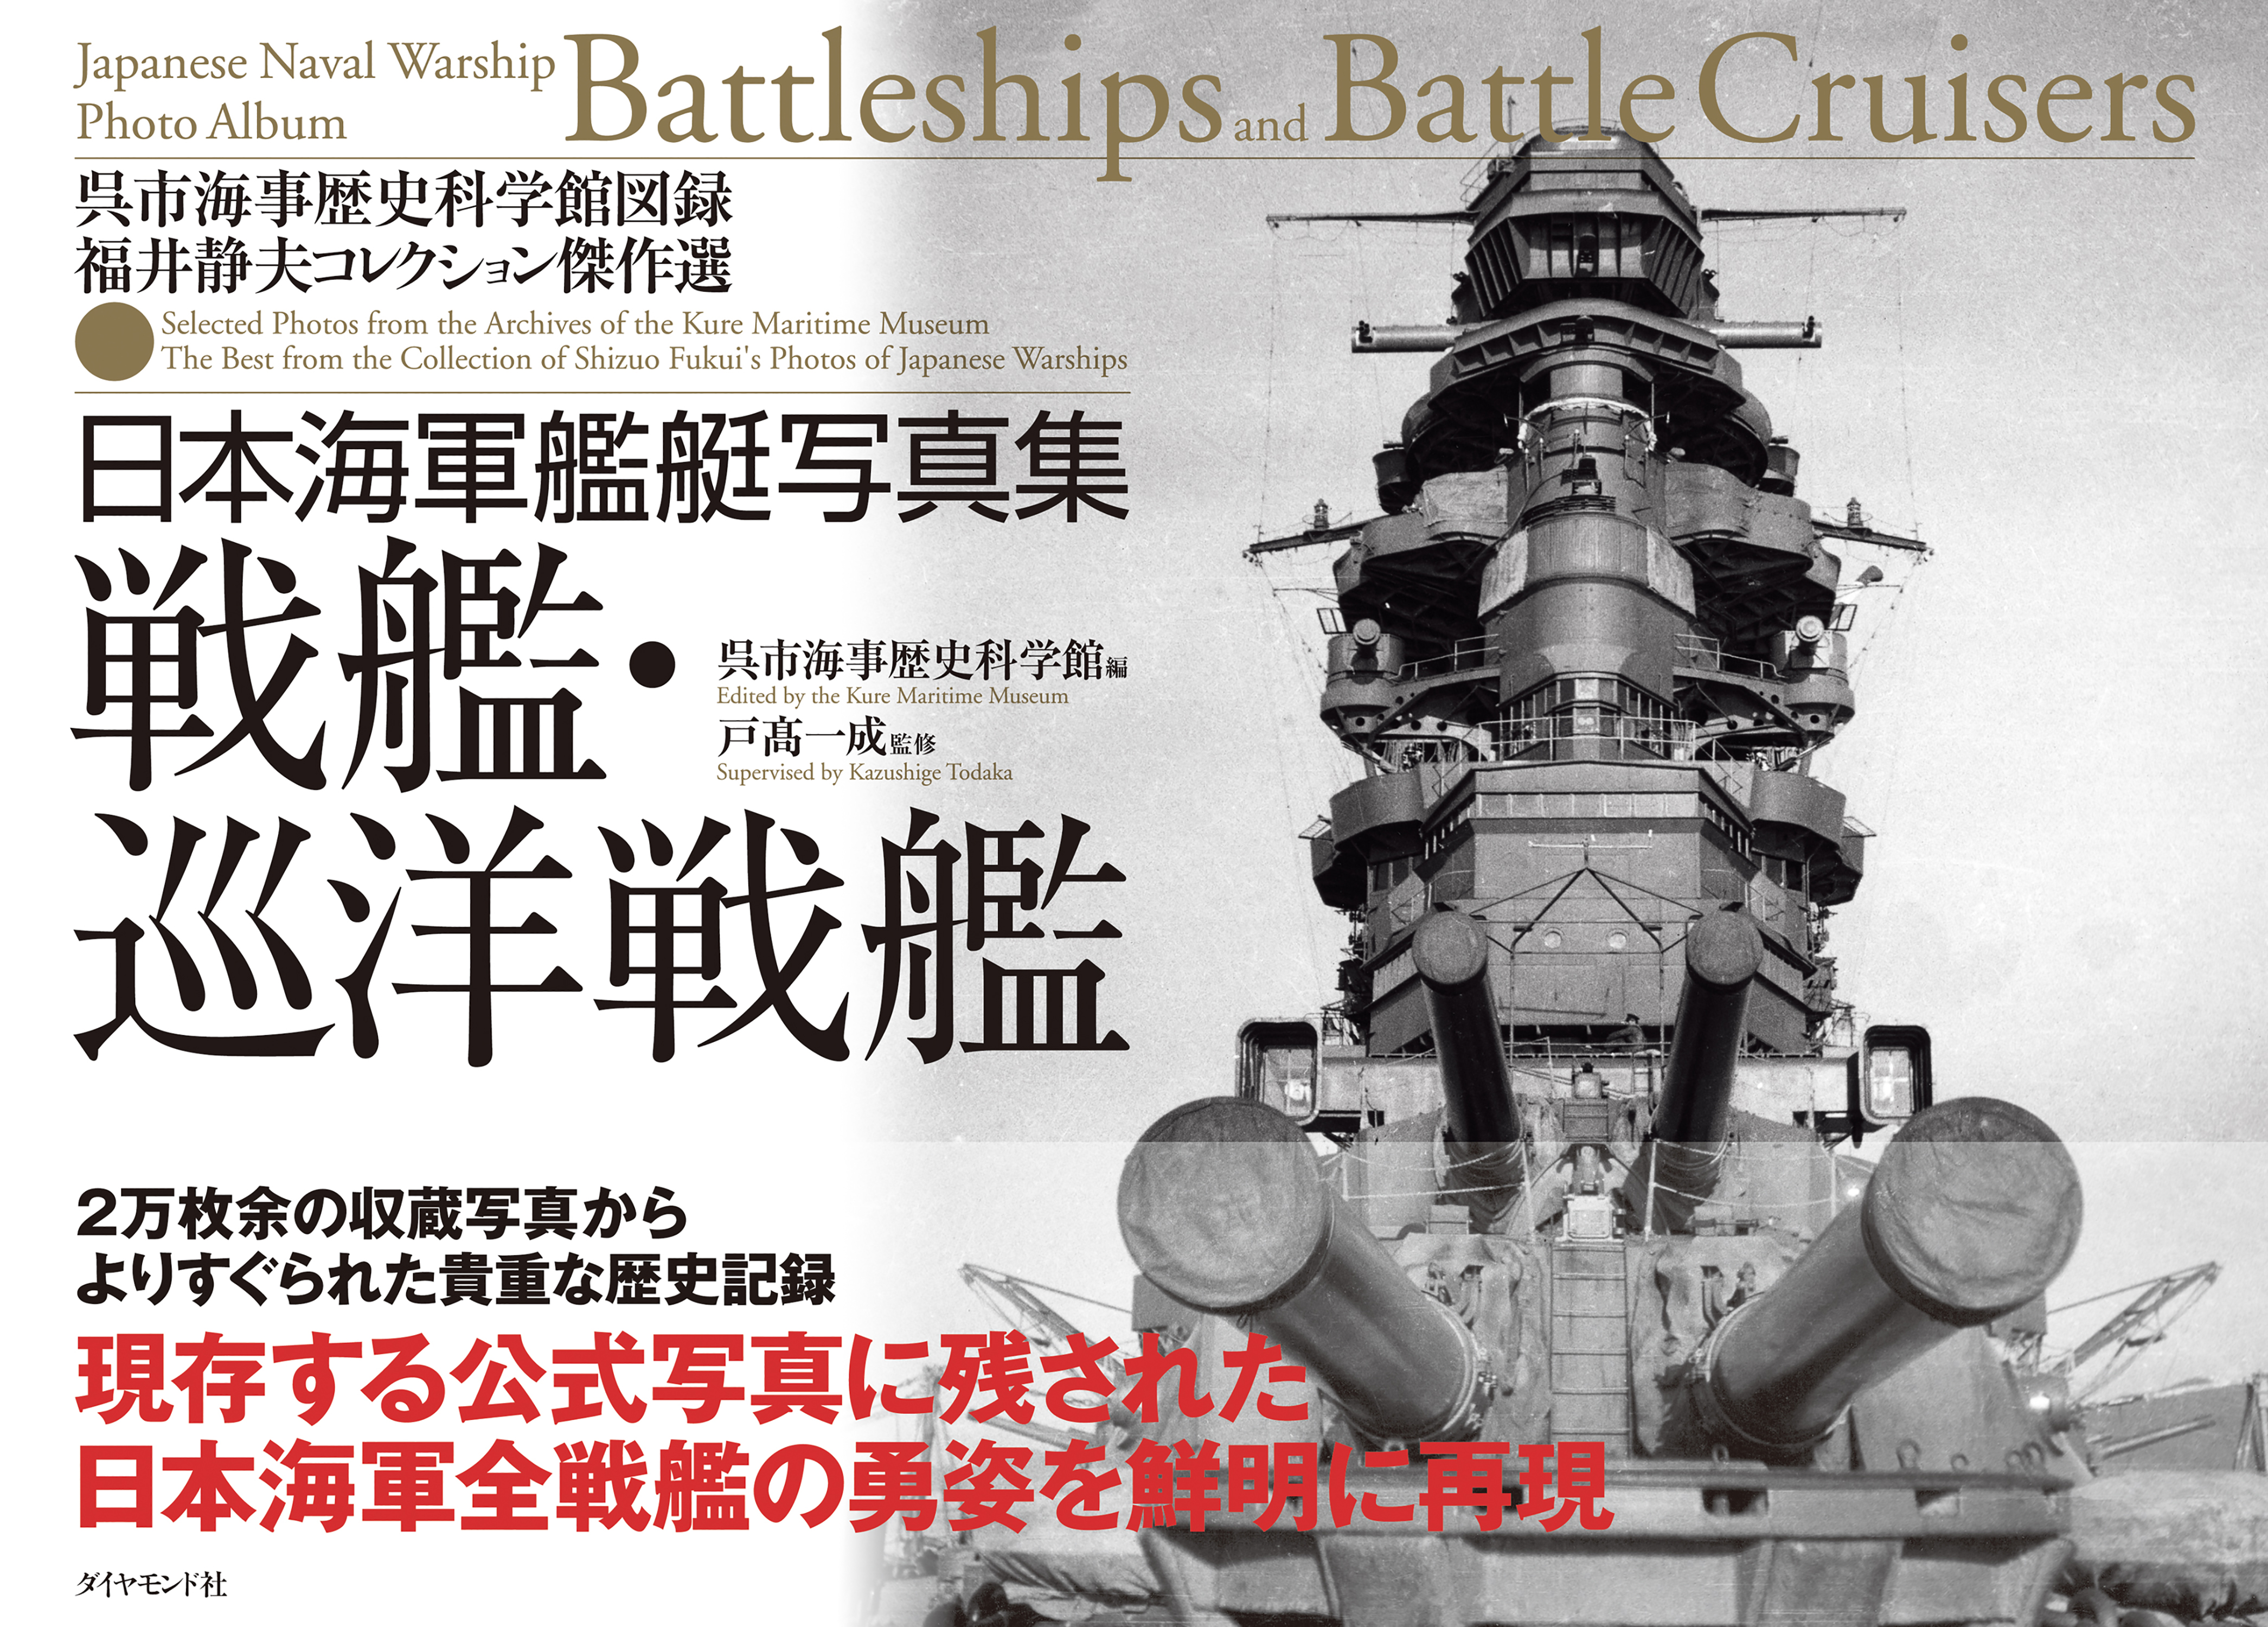 旧版「海軍艦隊史」・新版「日本海軍全艦艇史」-福井静夫氏 - ノン 